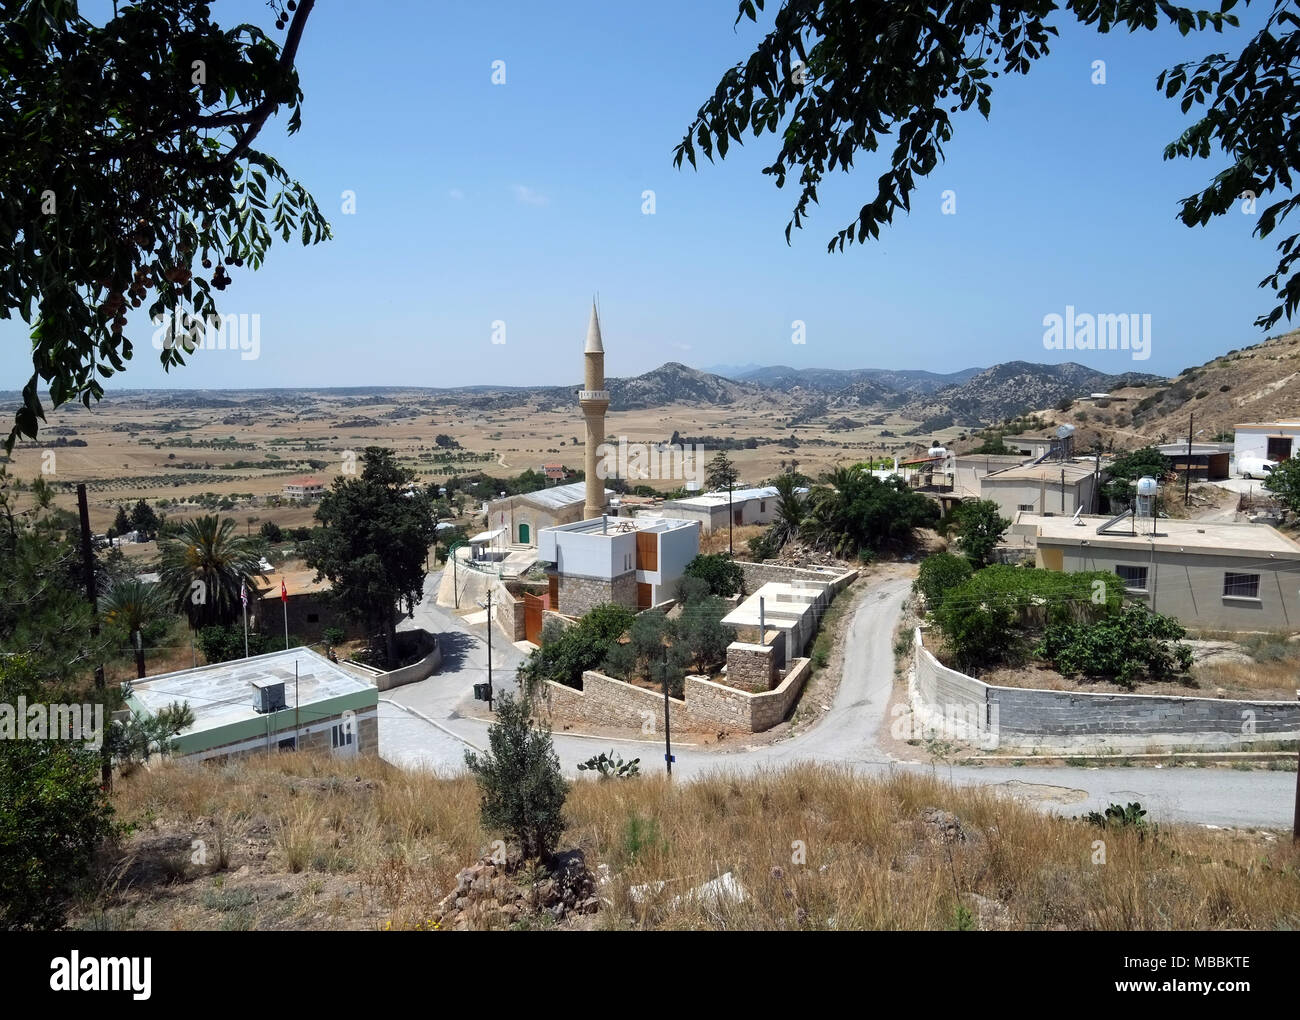 Il minareto di una moschea nel villaggio di Balalan sulla penisola karpass, la parte settentrionale di Cipro Foto Stock